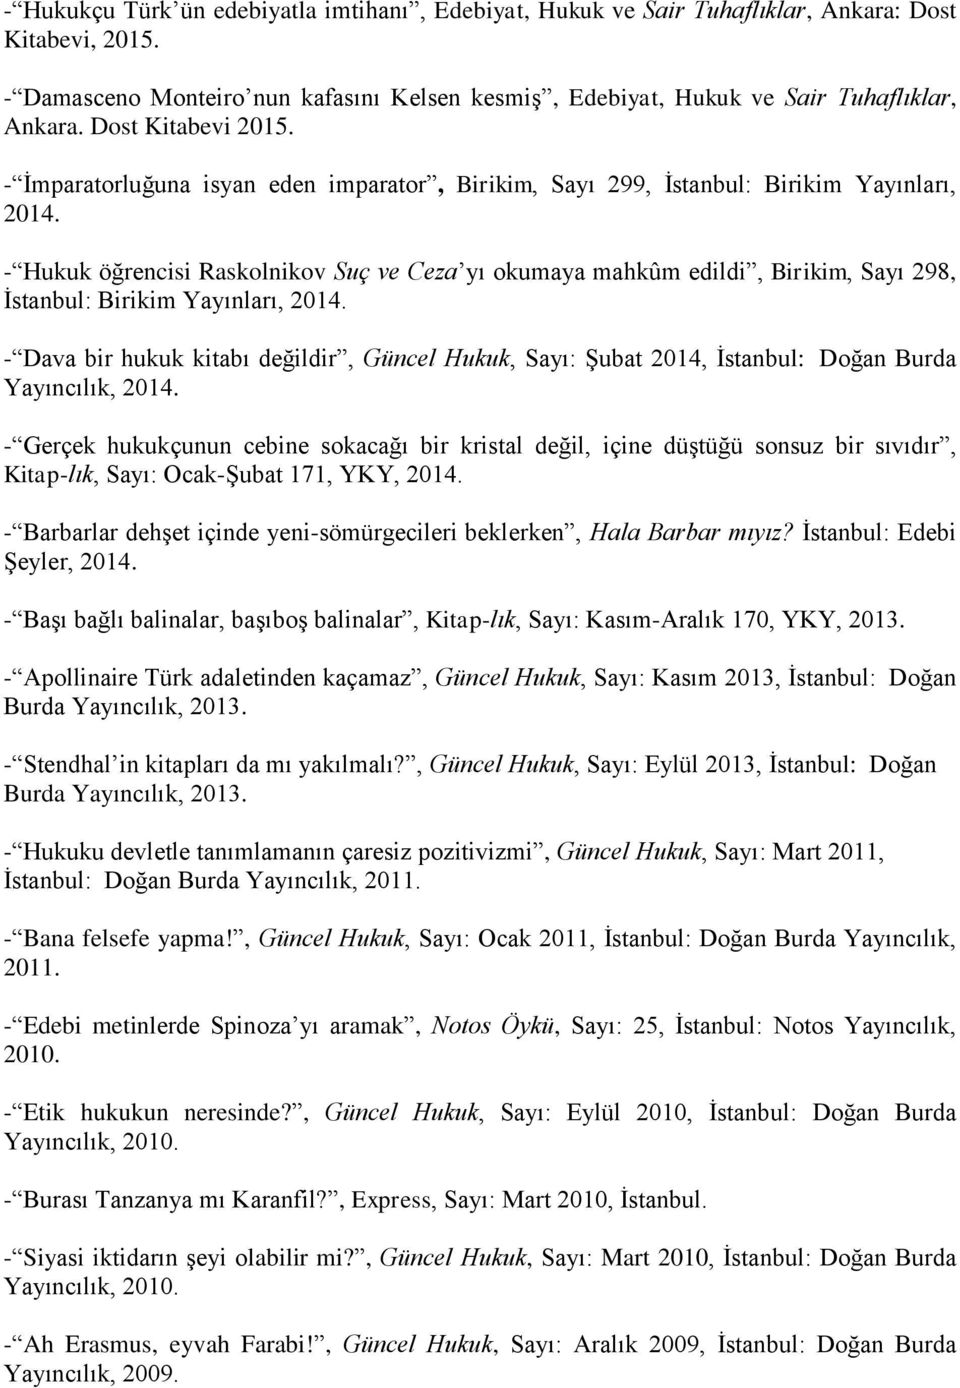 - Hukuk öğrencisi Raskolnikov Suç ve Ceza yı okumaya mahkûm edildi, Birikim, Sayı 298, İstanbul: Birikim Yayınları, 2014.